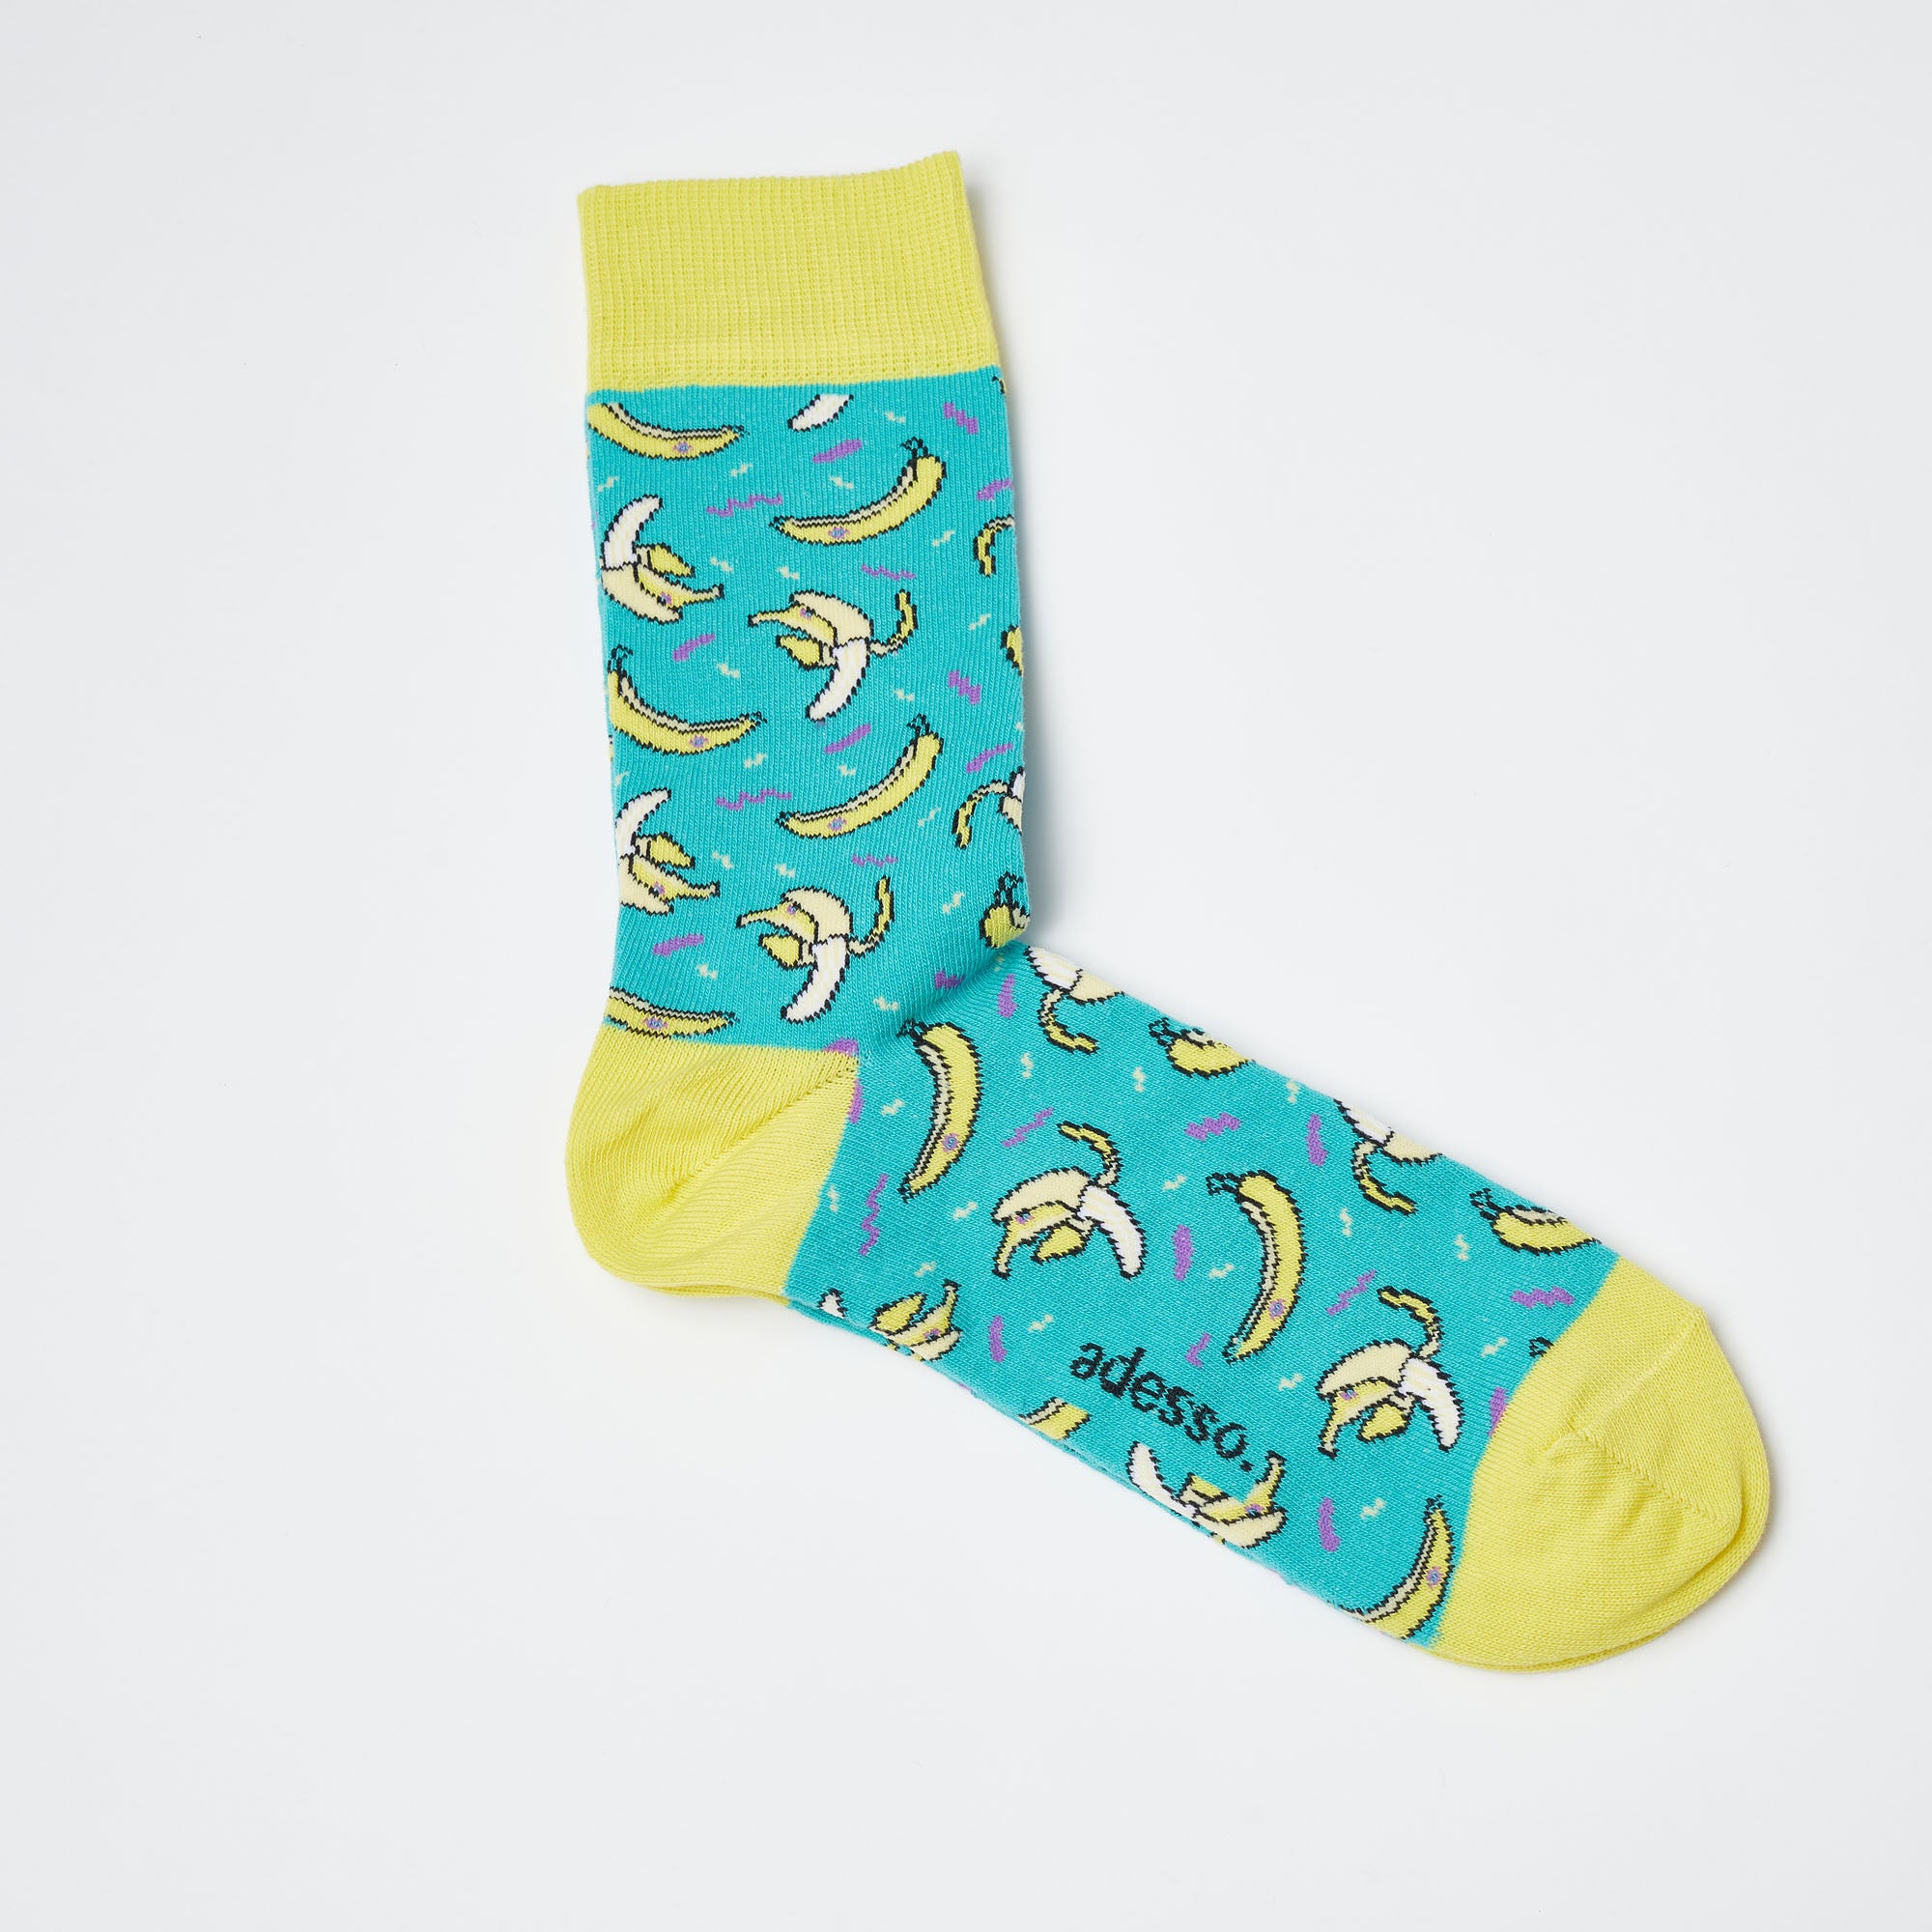 Retro Banana Socks